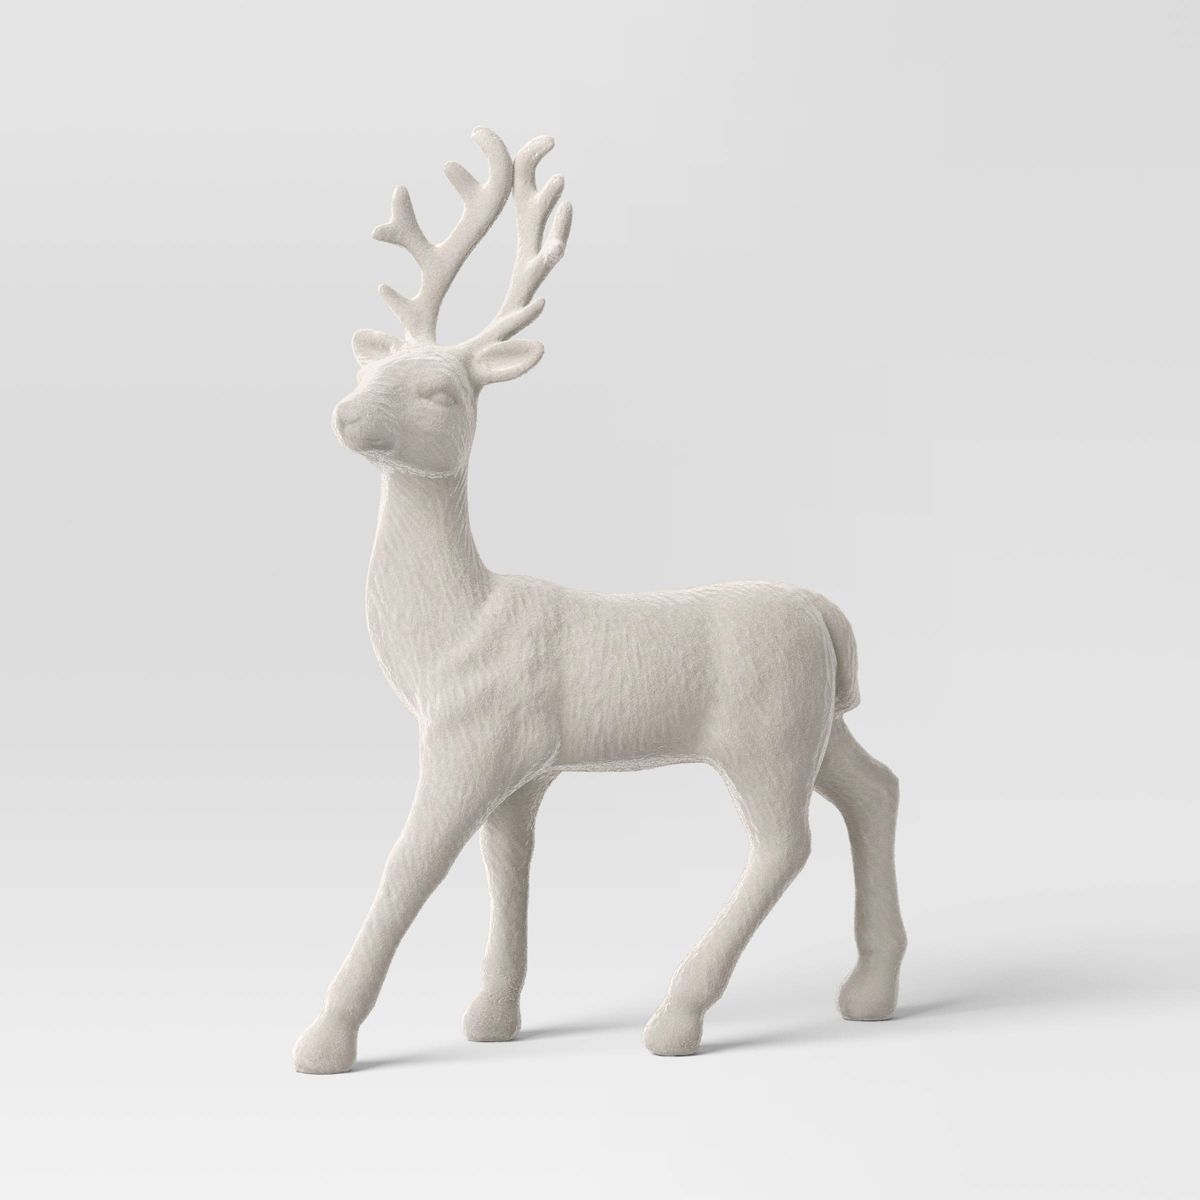 12.5" Flocked Standing Deer Animal Christmas Figurine - Wondershop™ Warm Gray | Target